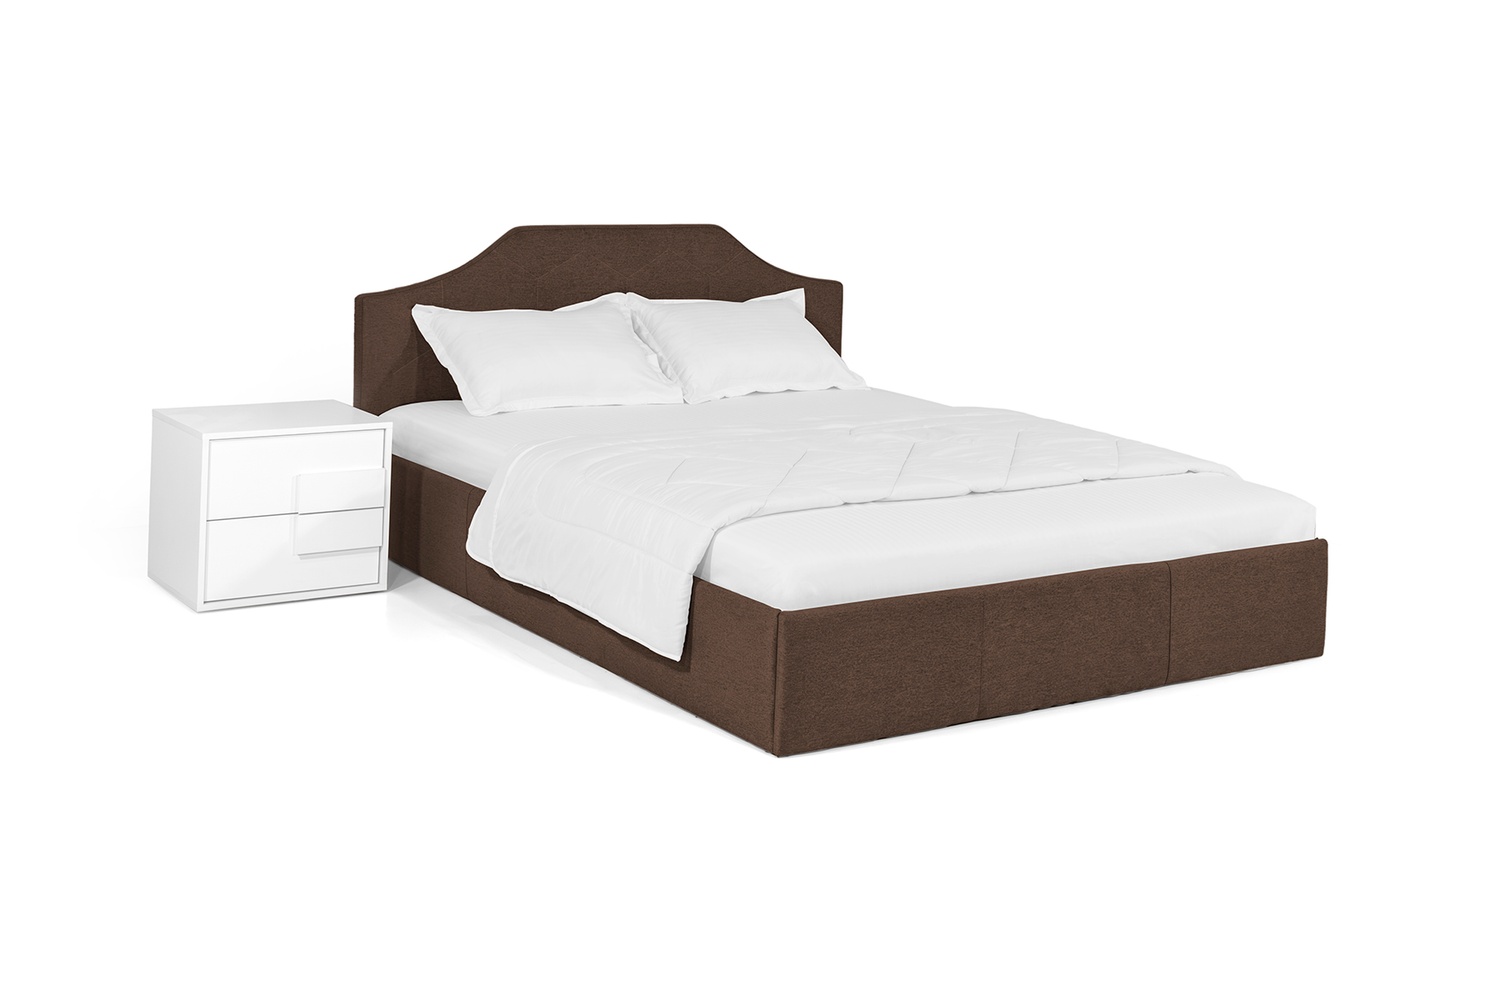 Ліжко Моніка 160х200 (Коричневий, ламелі, матрац, ніша) lmnk160x200kor фото